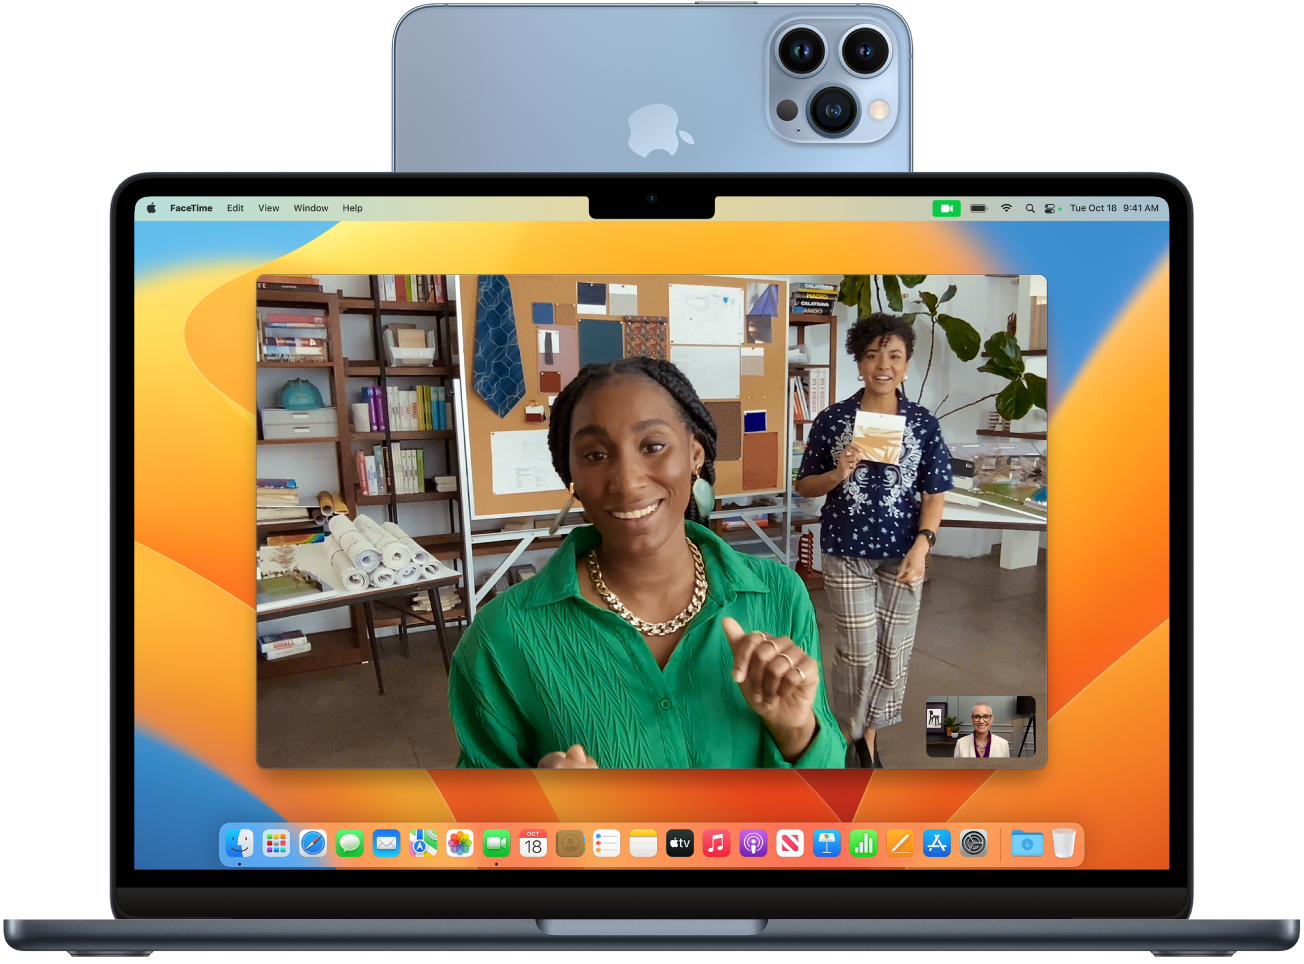 Računalnik Mac z iPhonom, ki se uporablja kot spletna kamera, nameščena na vrhu zaslona. Slika iz kamere iPhona je vidna na zaslonu računalnika Mac.